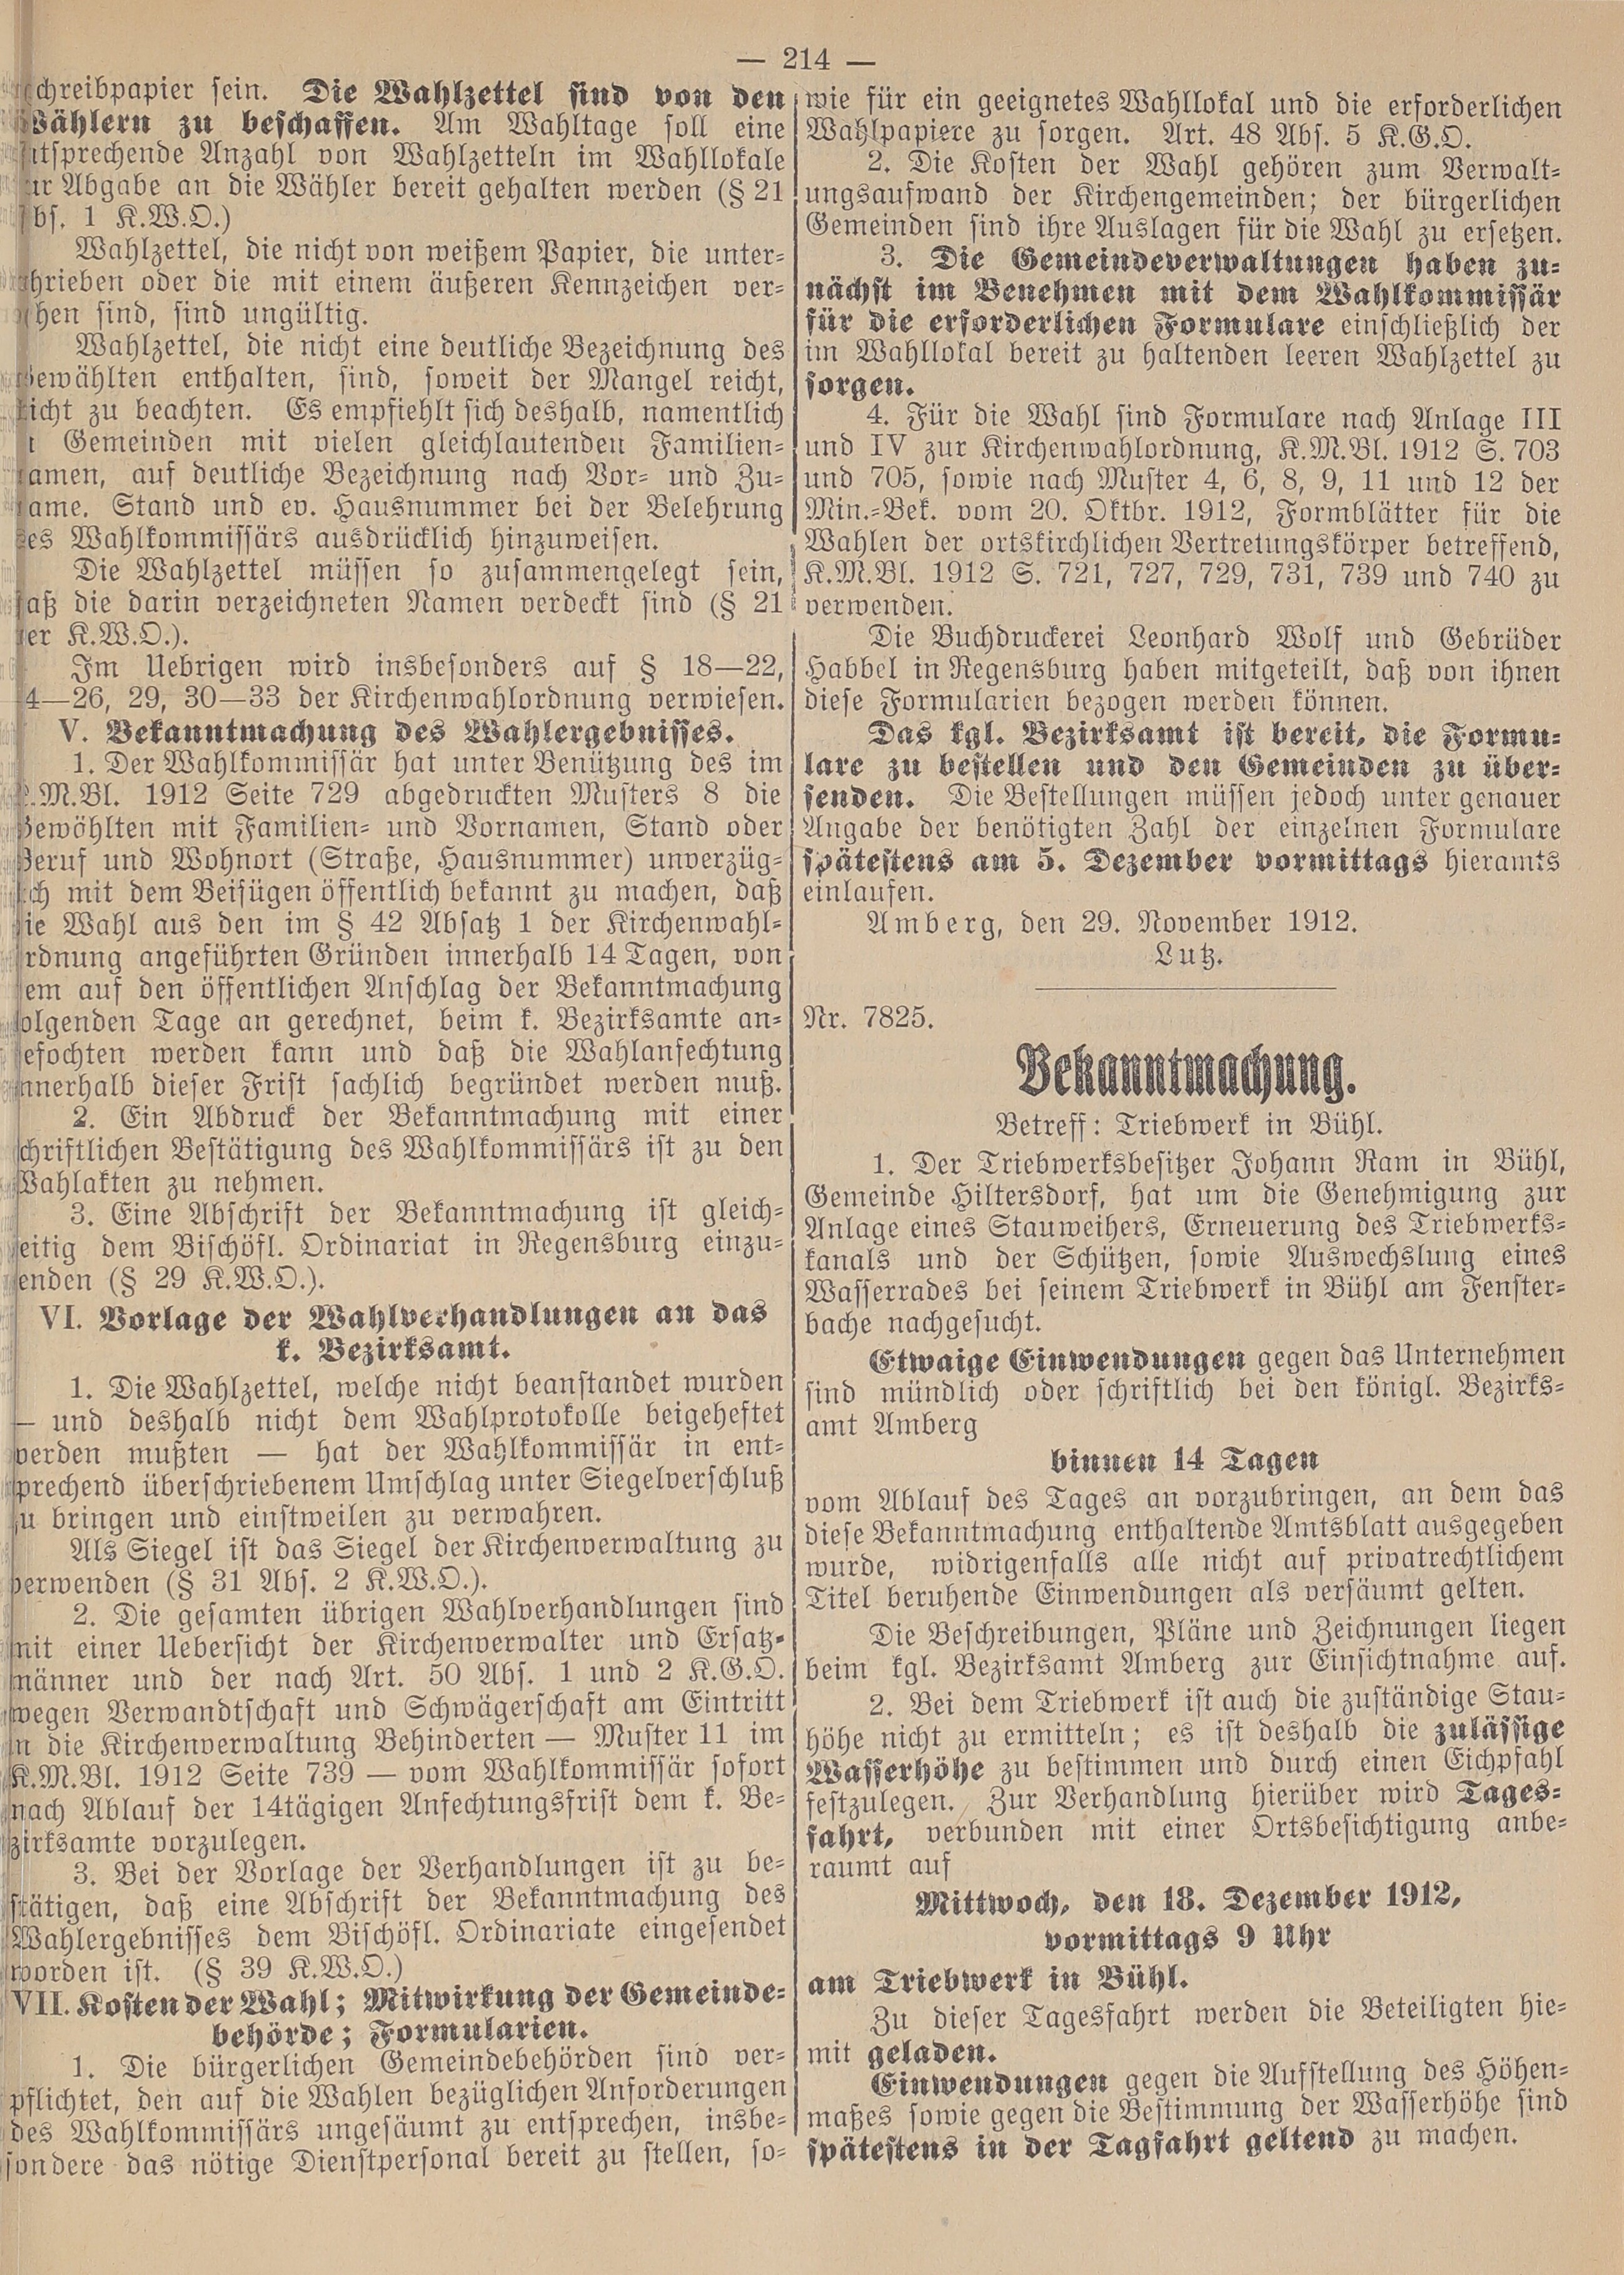 3. amtsblatt-amberg-1912-11-30-n56_4830